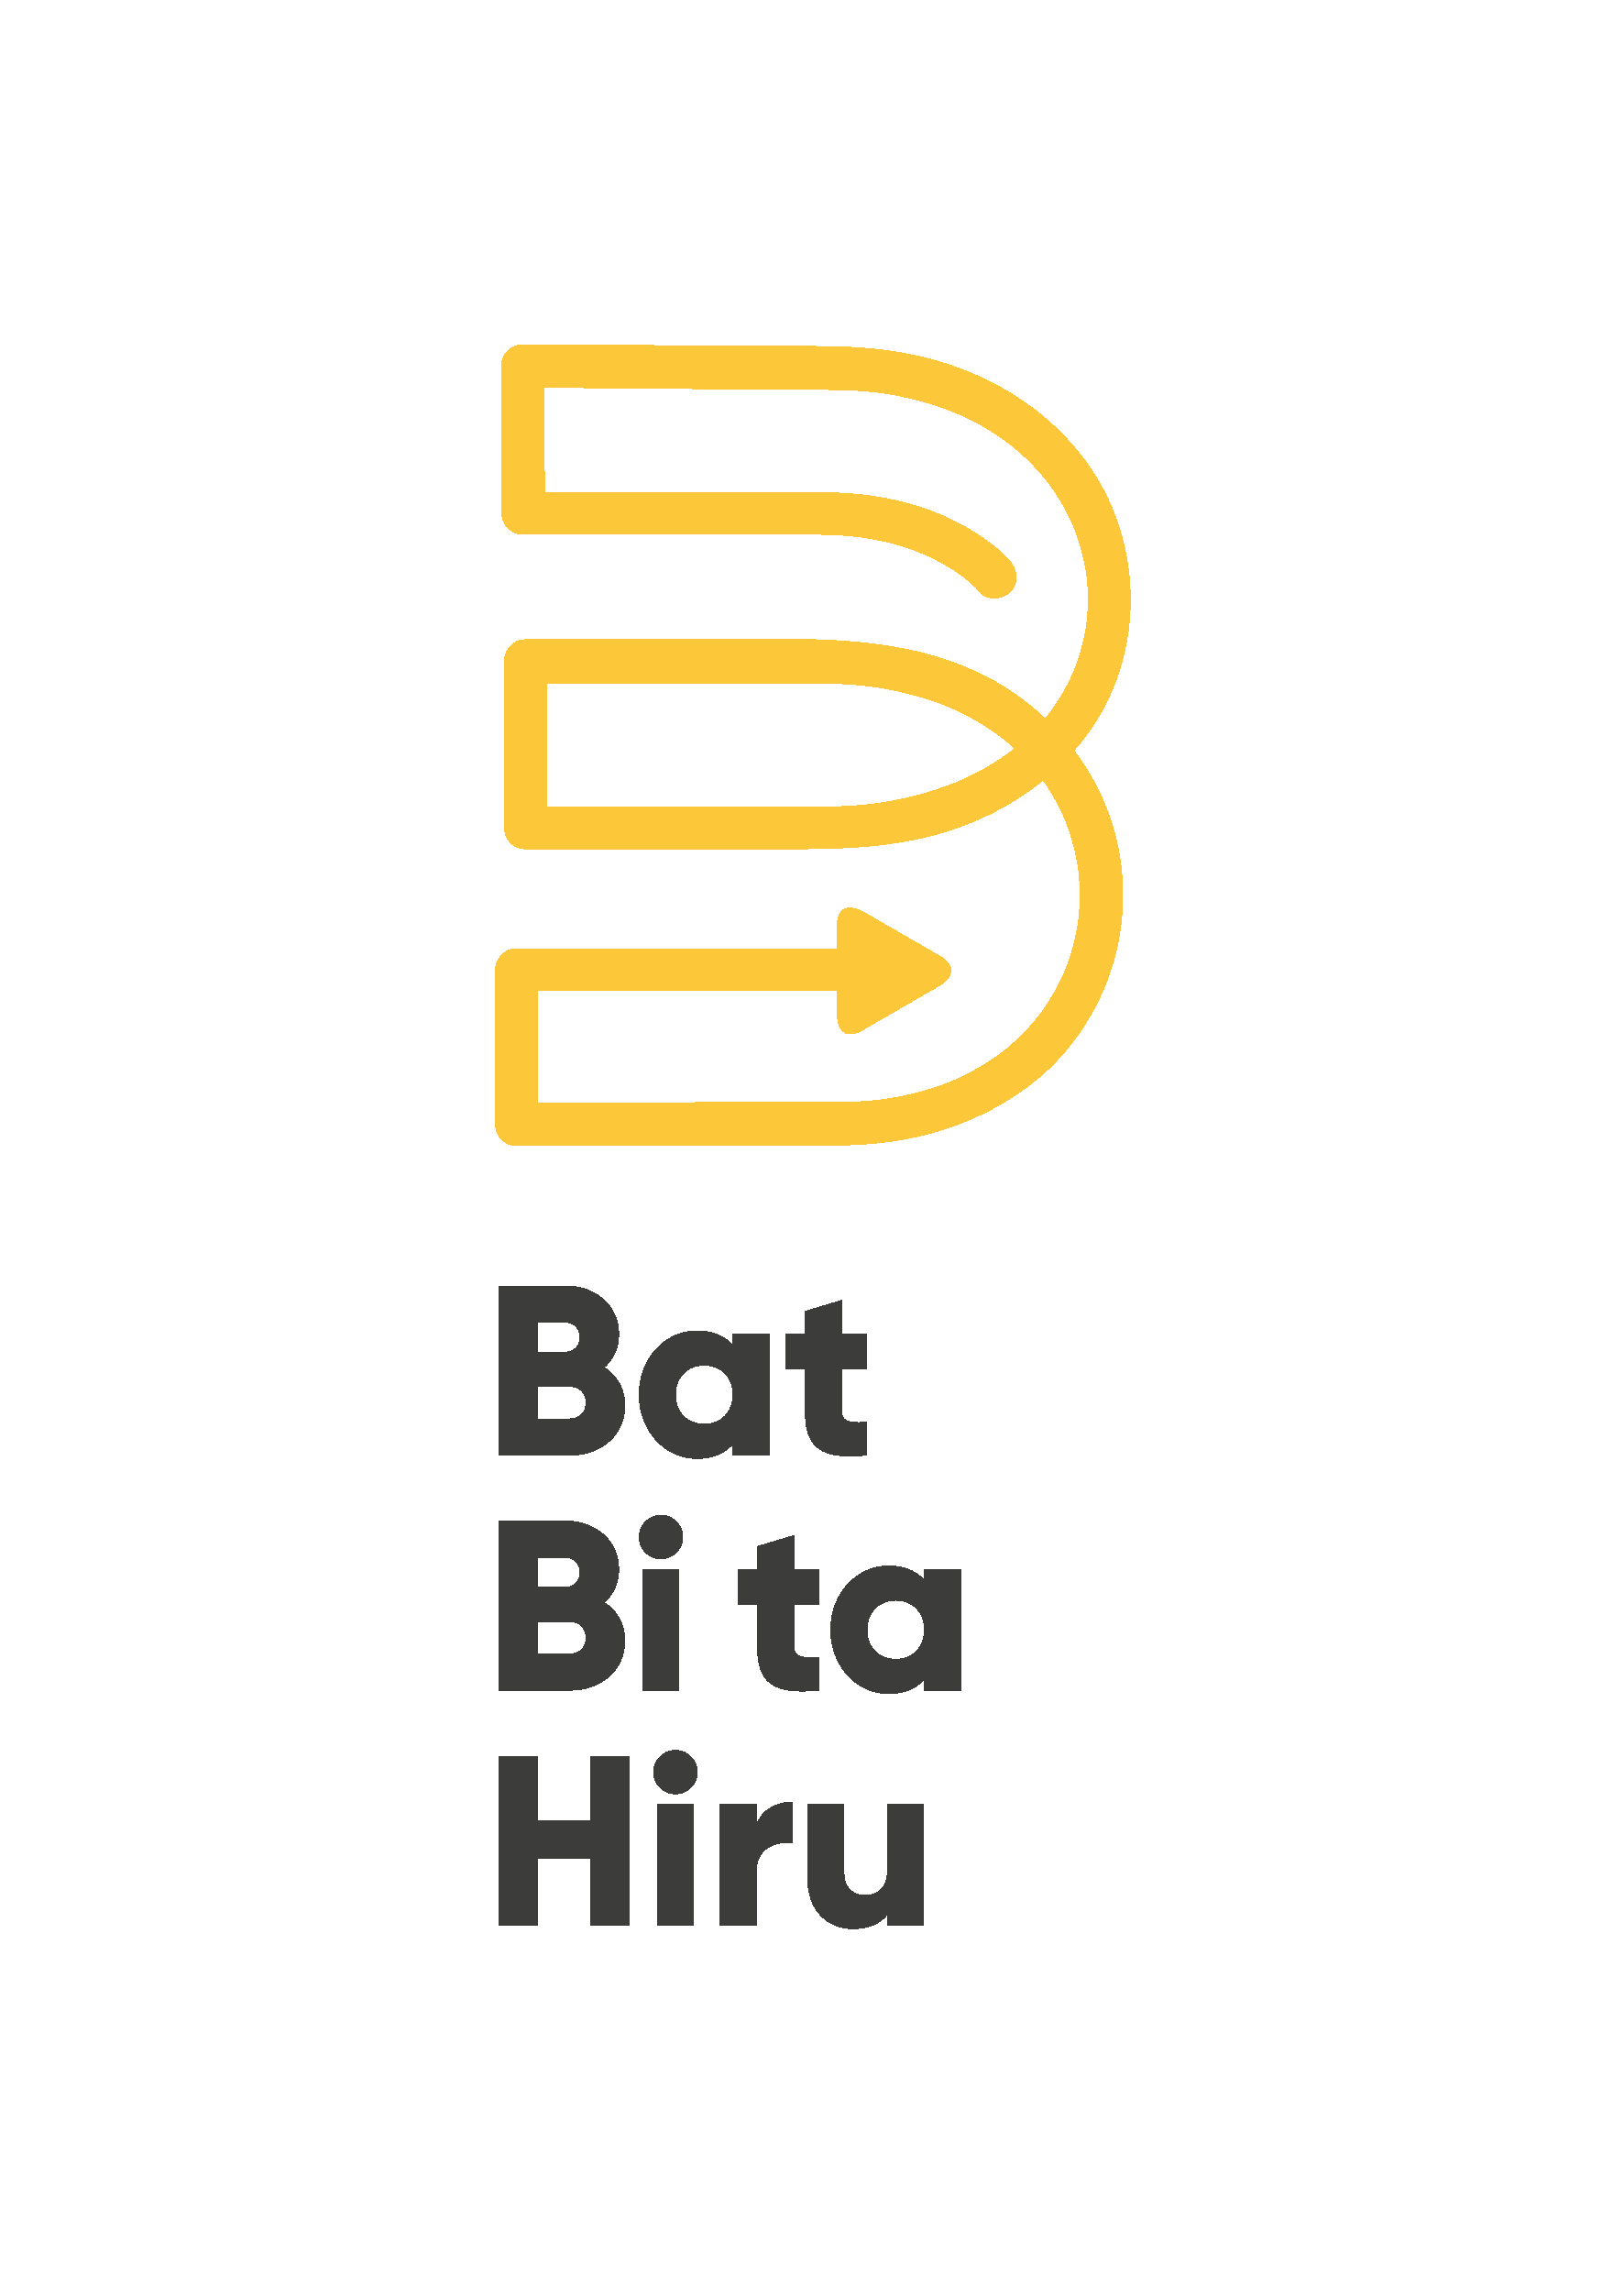 Bat Bi ta Hiru